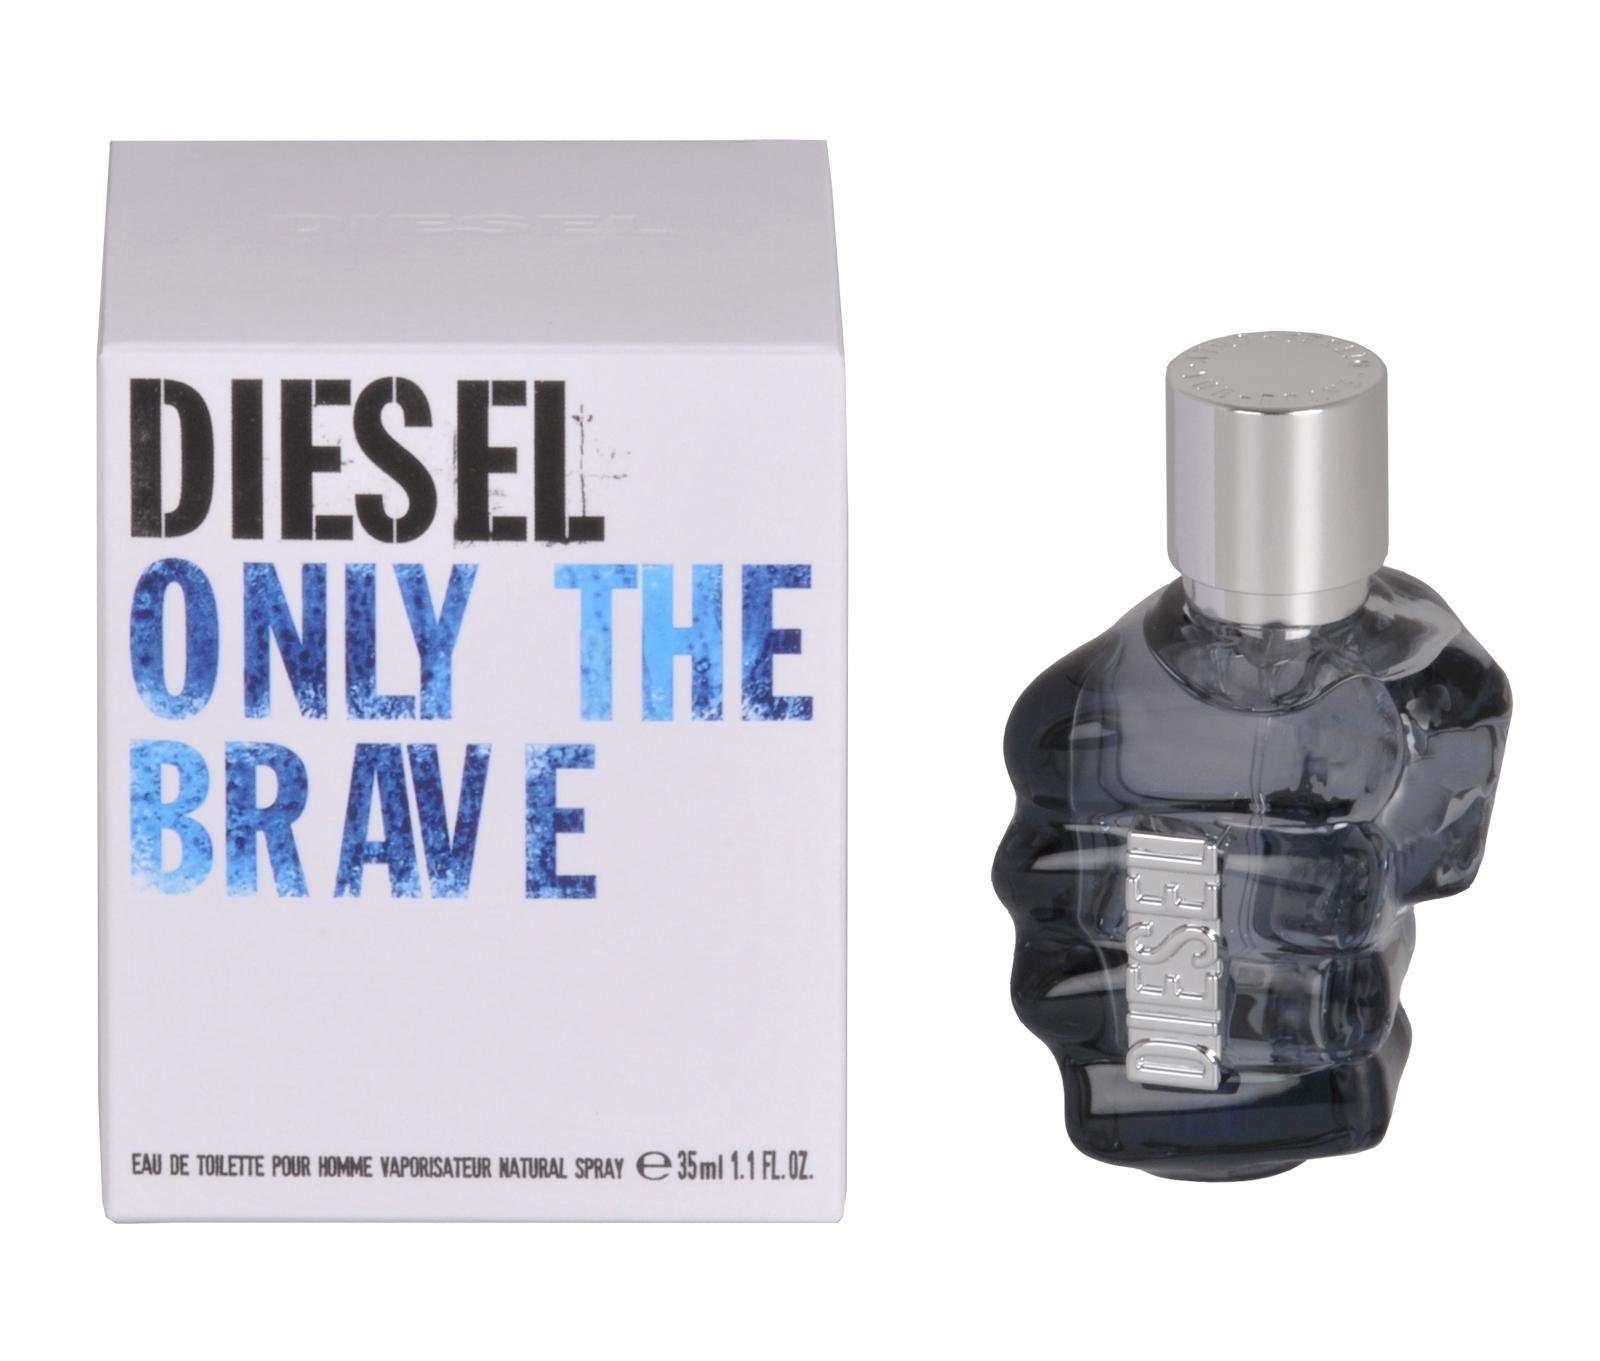 Parfum, Toilette Only the Eau Männerduft Diesel Brave, EdT, de